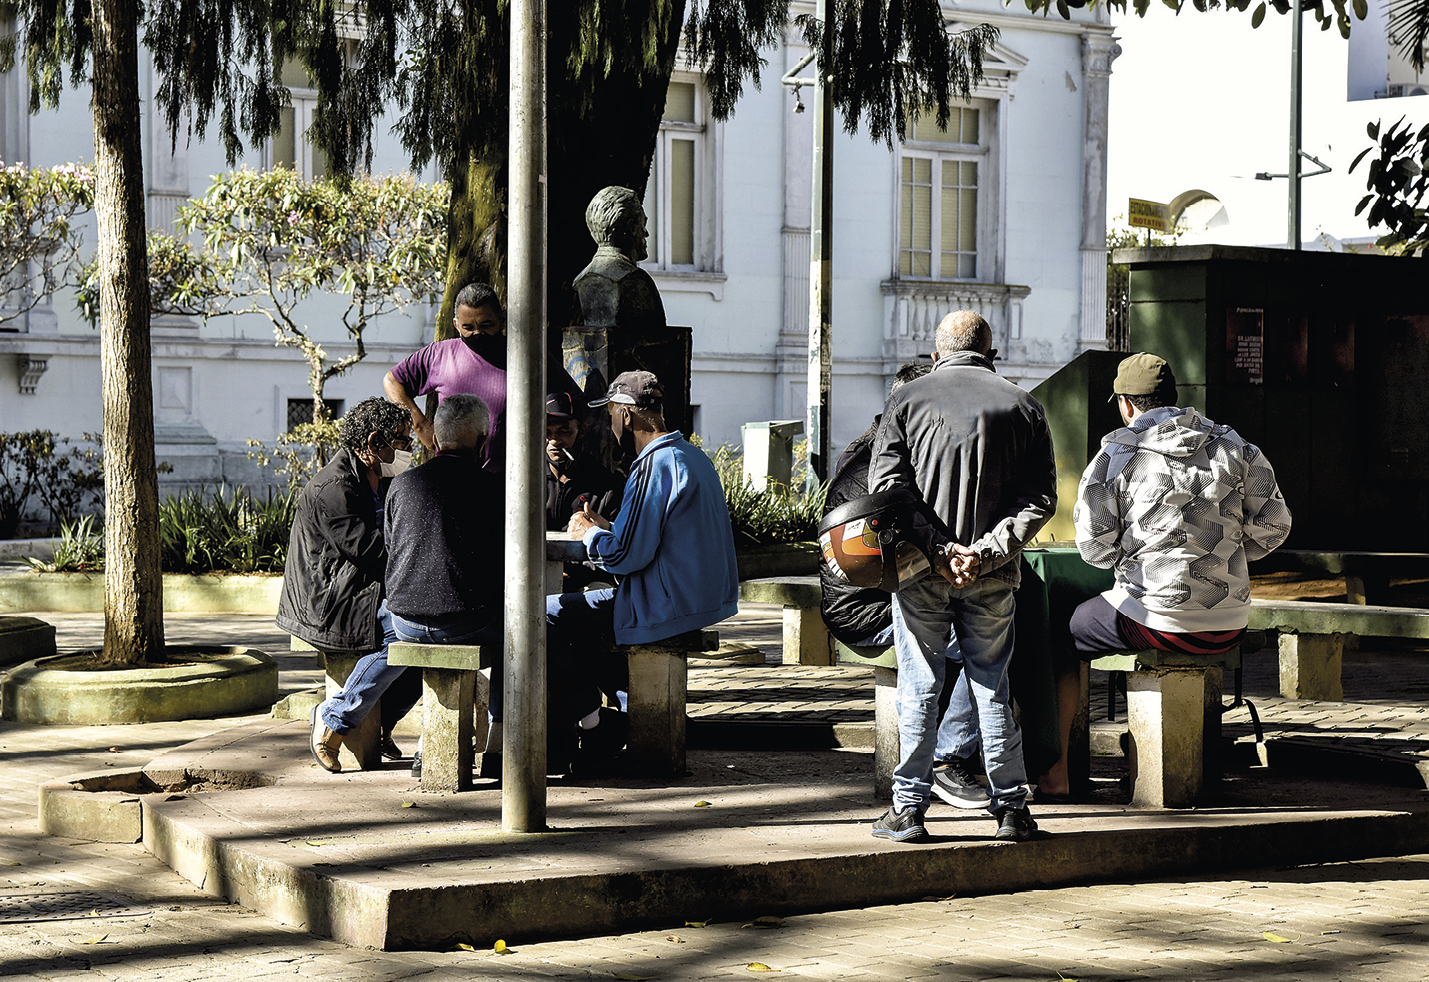 Fotografia. Pessoas reunidas em uma praça. Elas estão sentadas ao entorno de duas mesas, e duas pessoas estão em pé observando o restante do grupo. Ao fundo há árvores e uma grande construção branca.